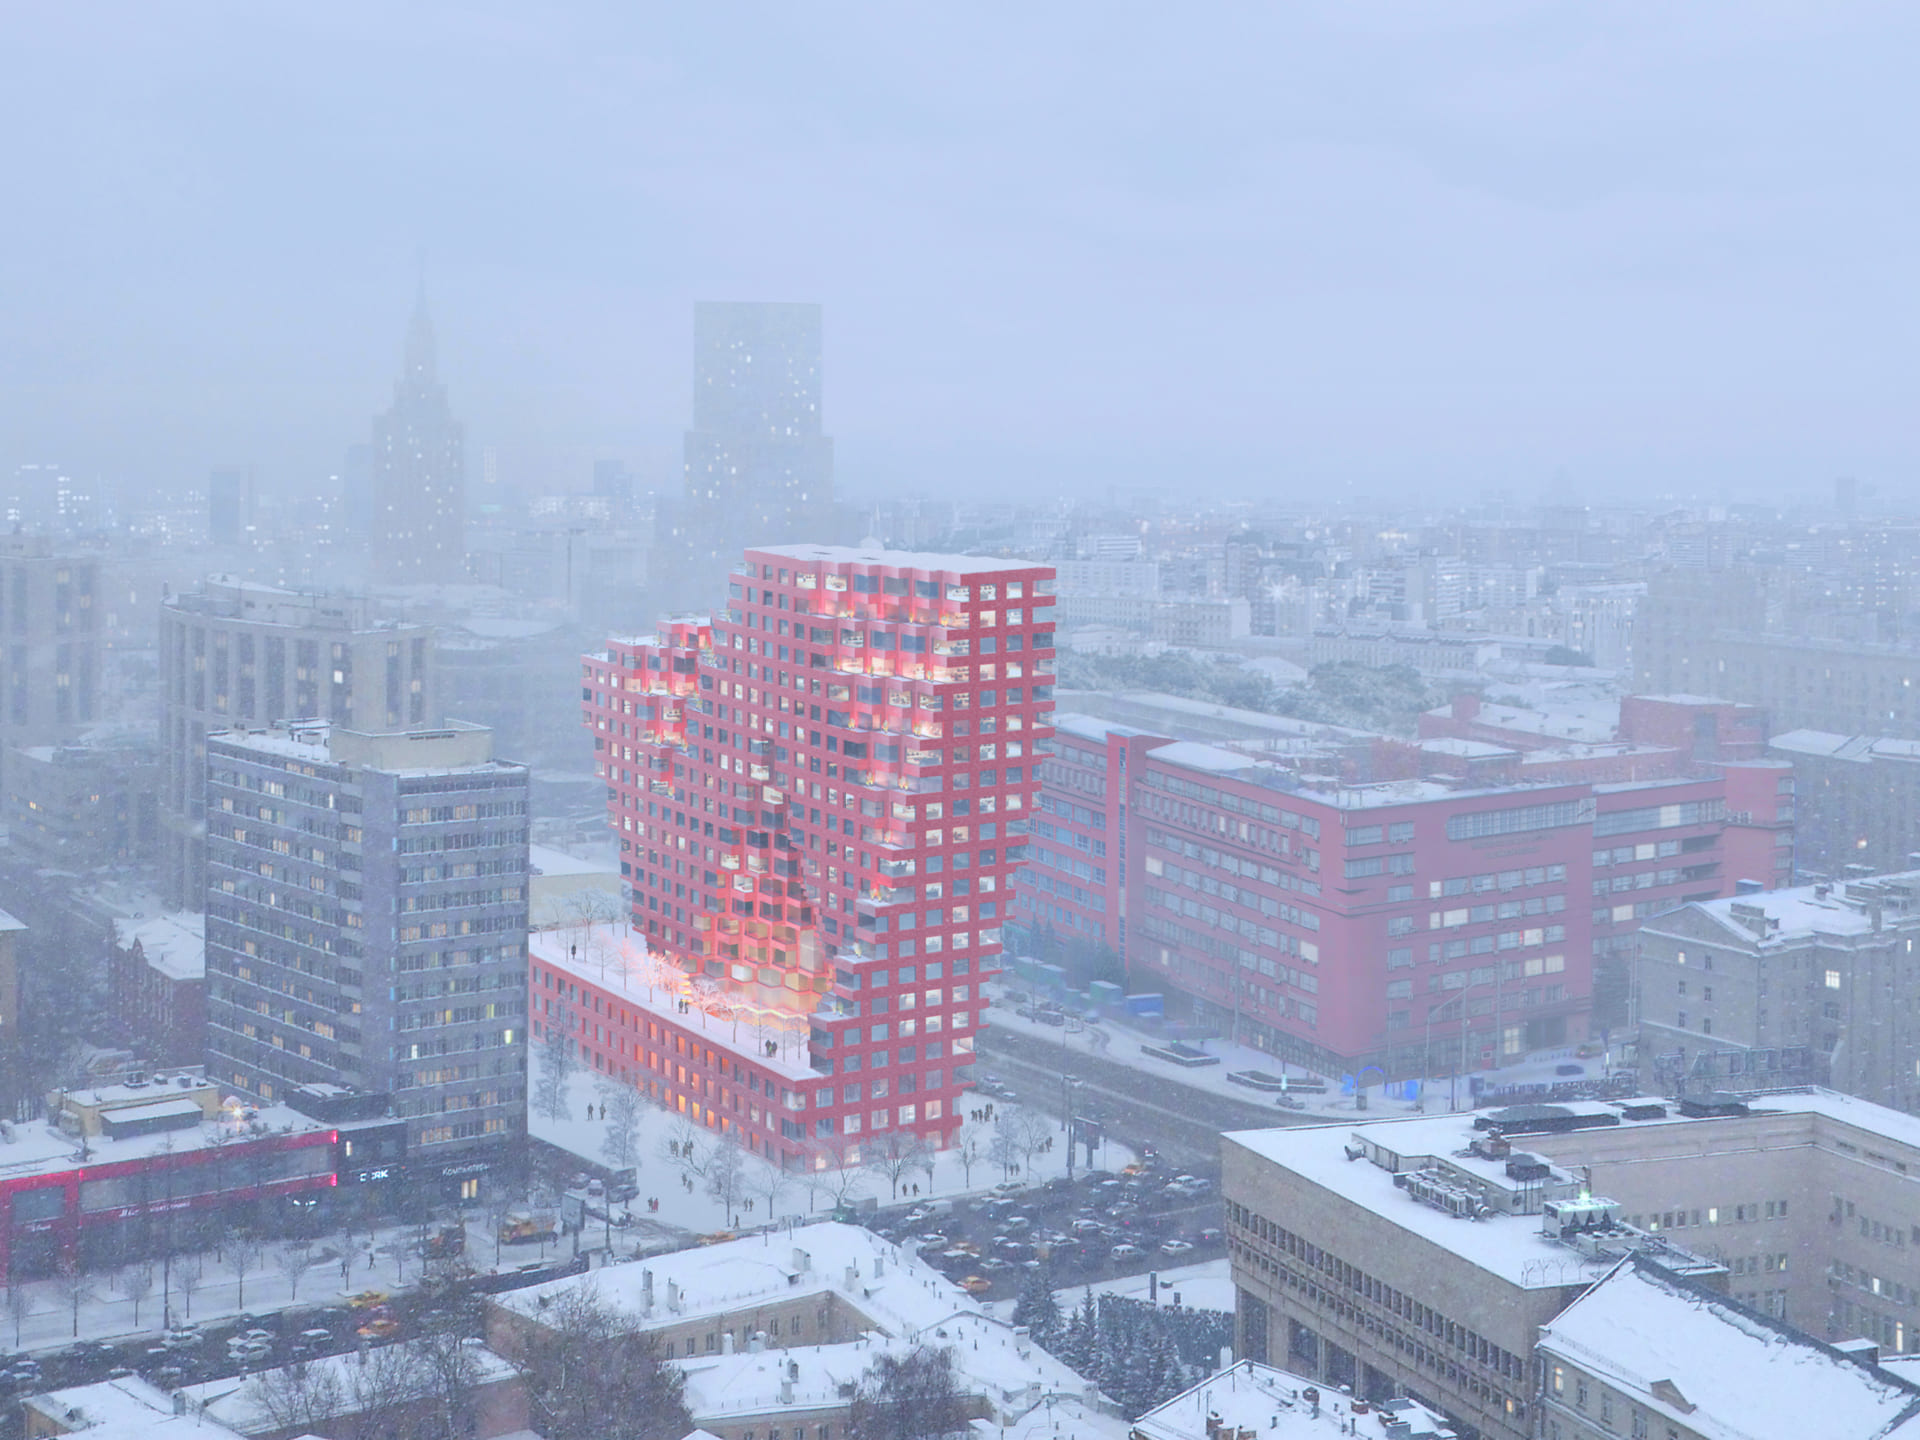 Mvrdv初のロシアでの建築プロジェクト Red7 赤レンガを用いた近隣の構成主義建築をモチーフに Webマガジン Axis デザインのwebメディア